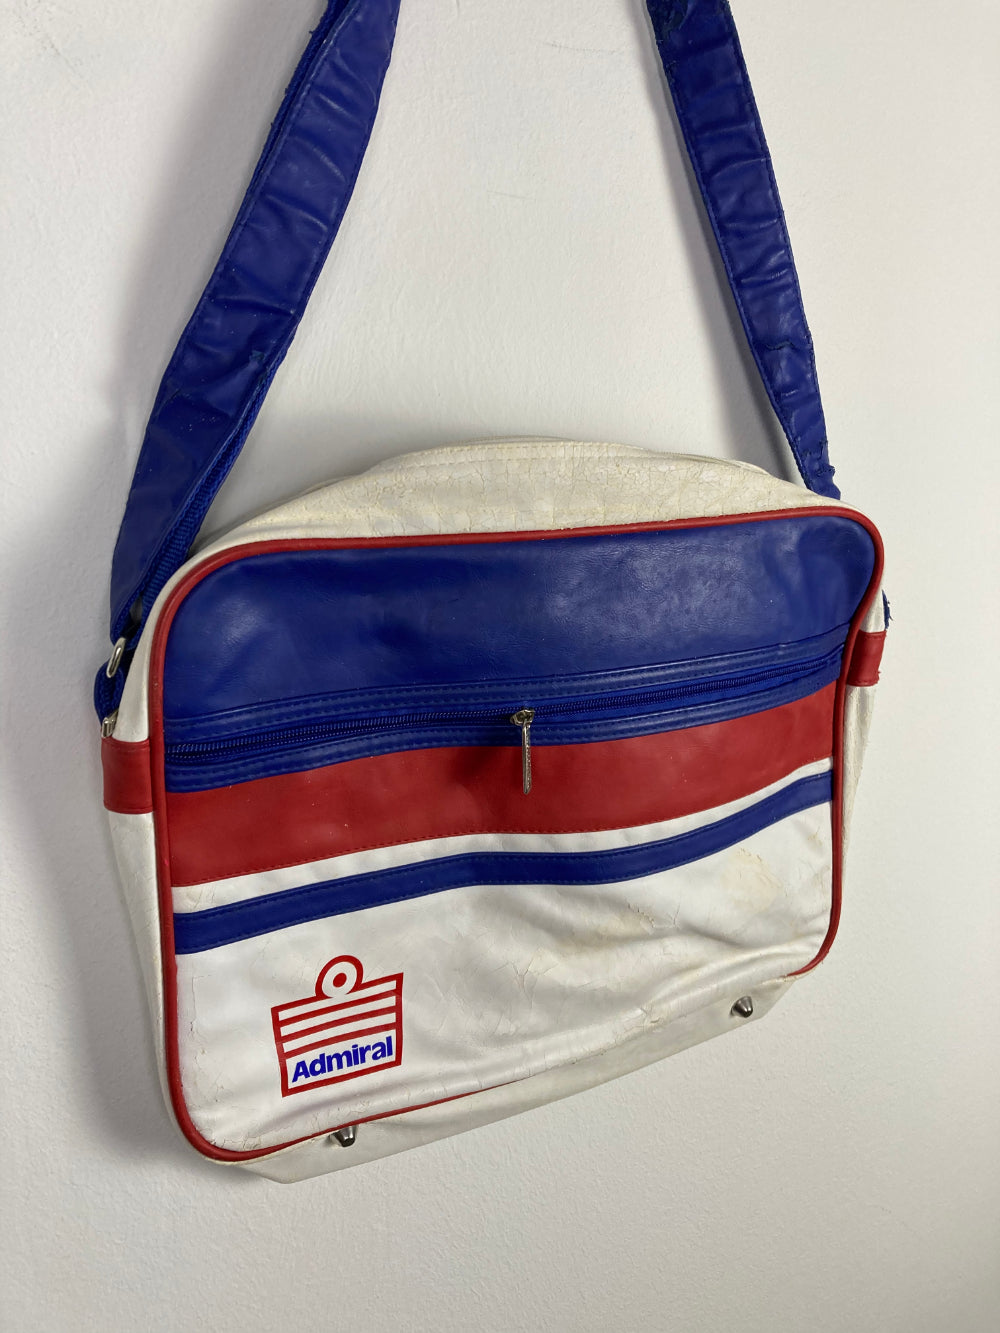 
                  
                    Original England Bag 1980s
                  
                